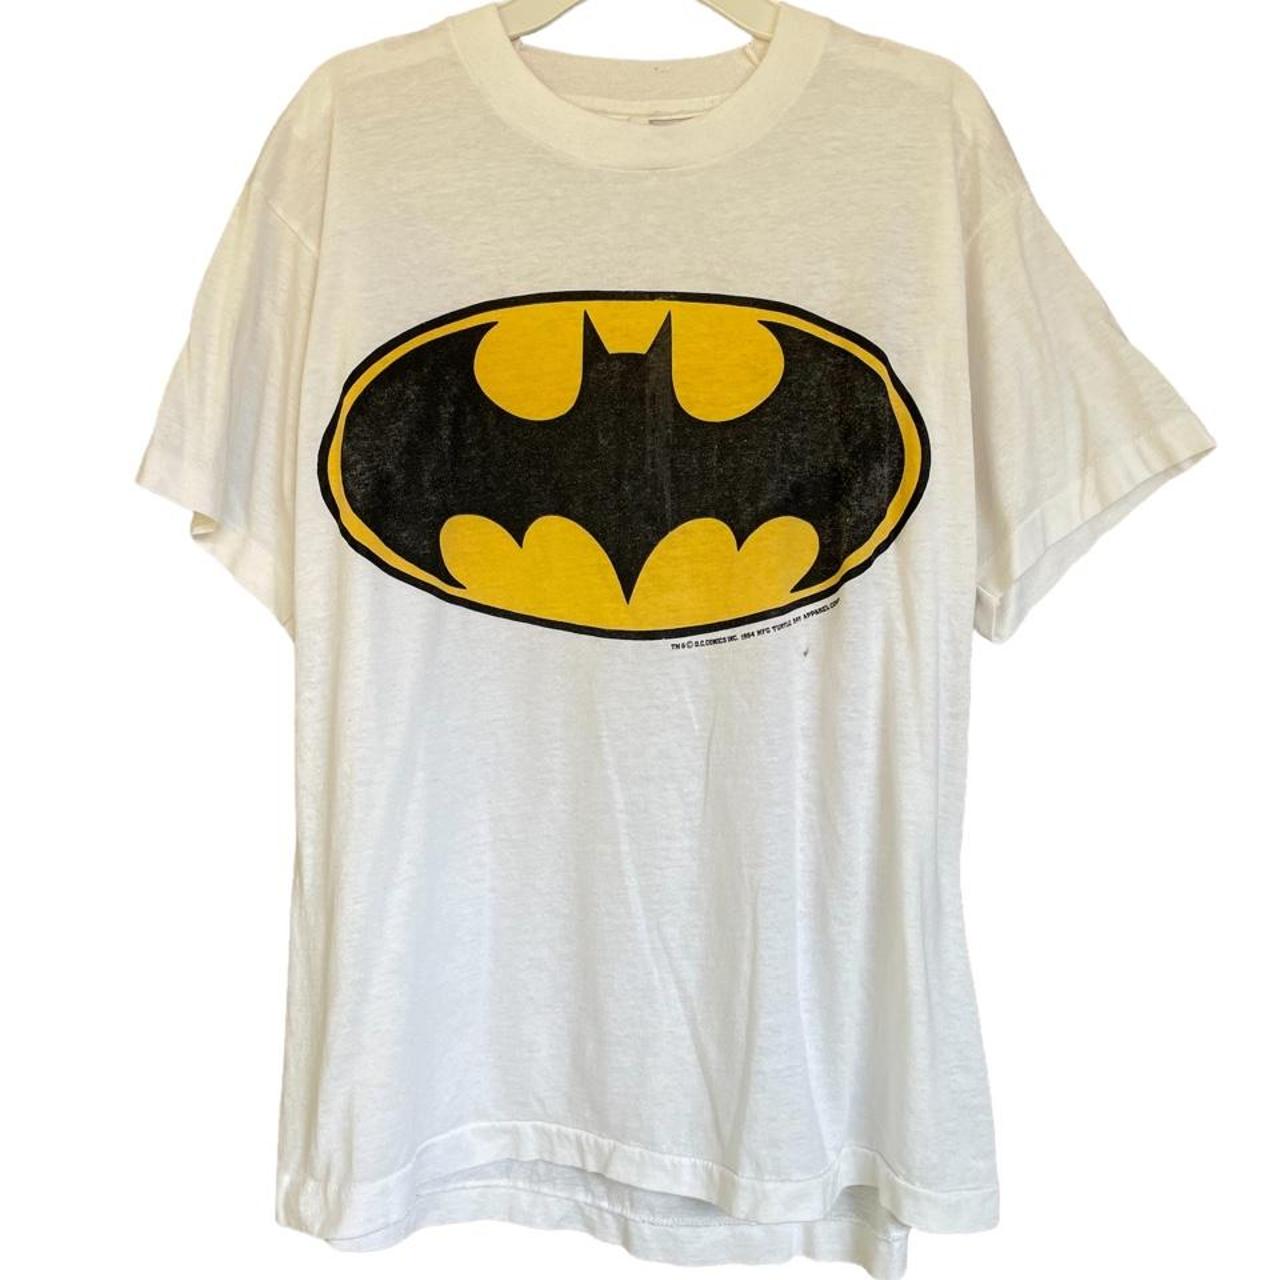 Vintage 60s (1964) DC Comics Batman Graphic T-Shirt!...